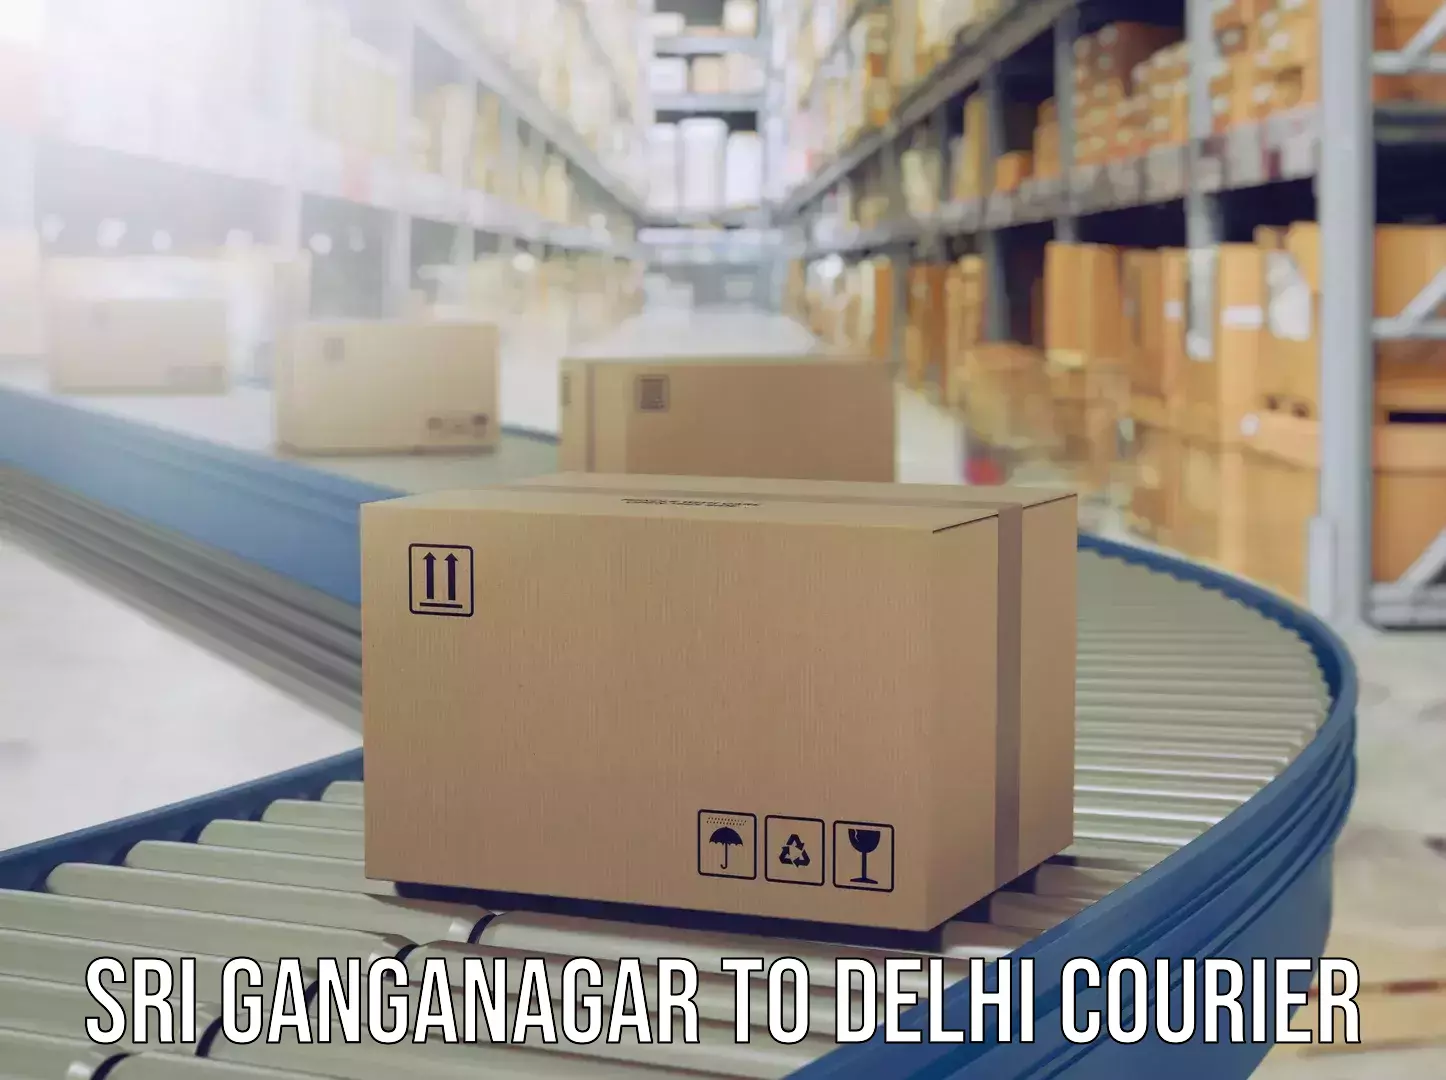 Luggage delivery estimate Sri Ganganagar to East Delhi